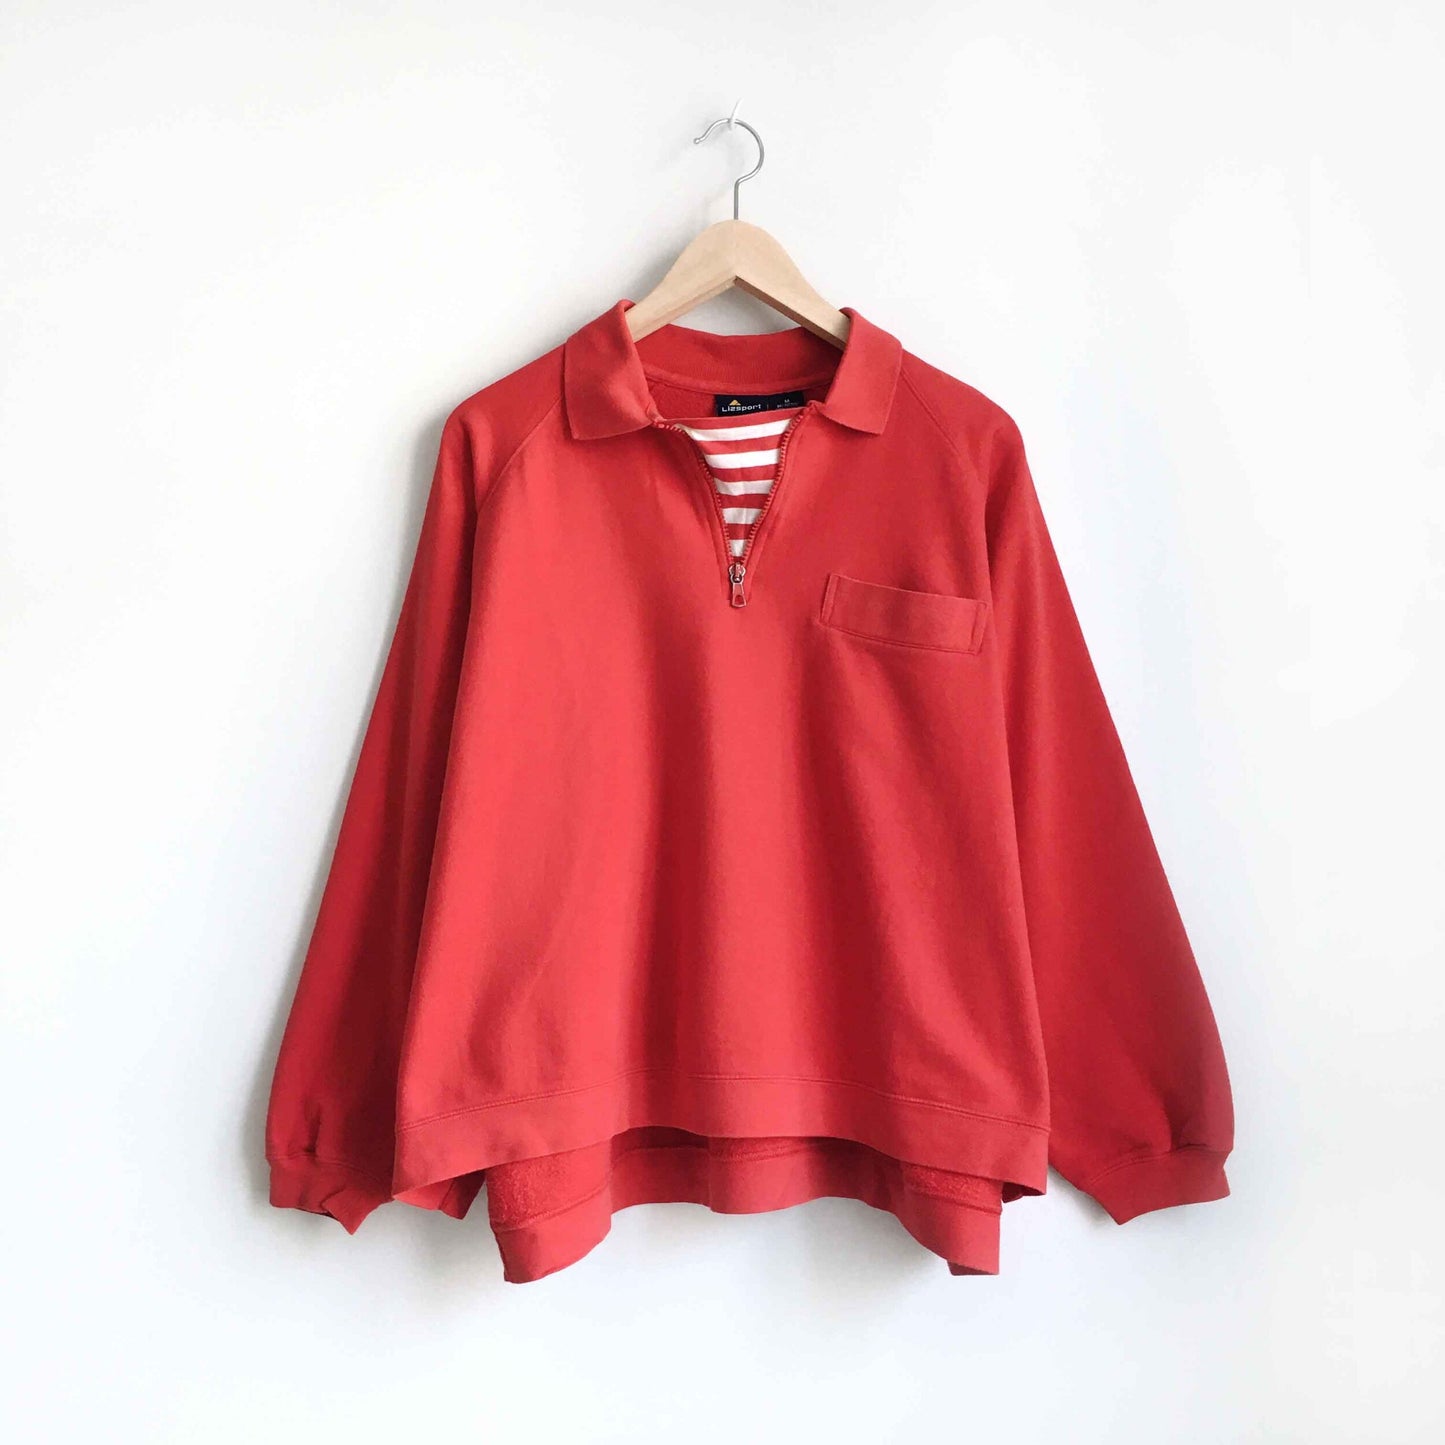 Vintage Liz Claiborne 1/4 zip collared sweatshirt - size Medium